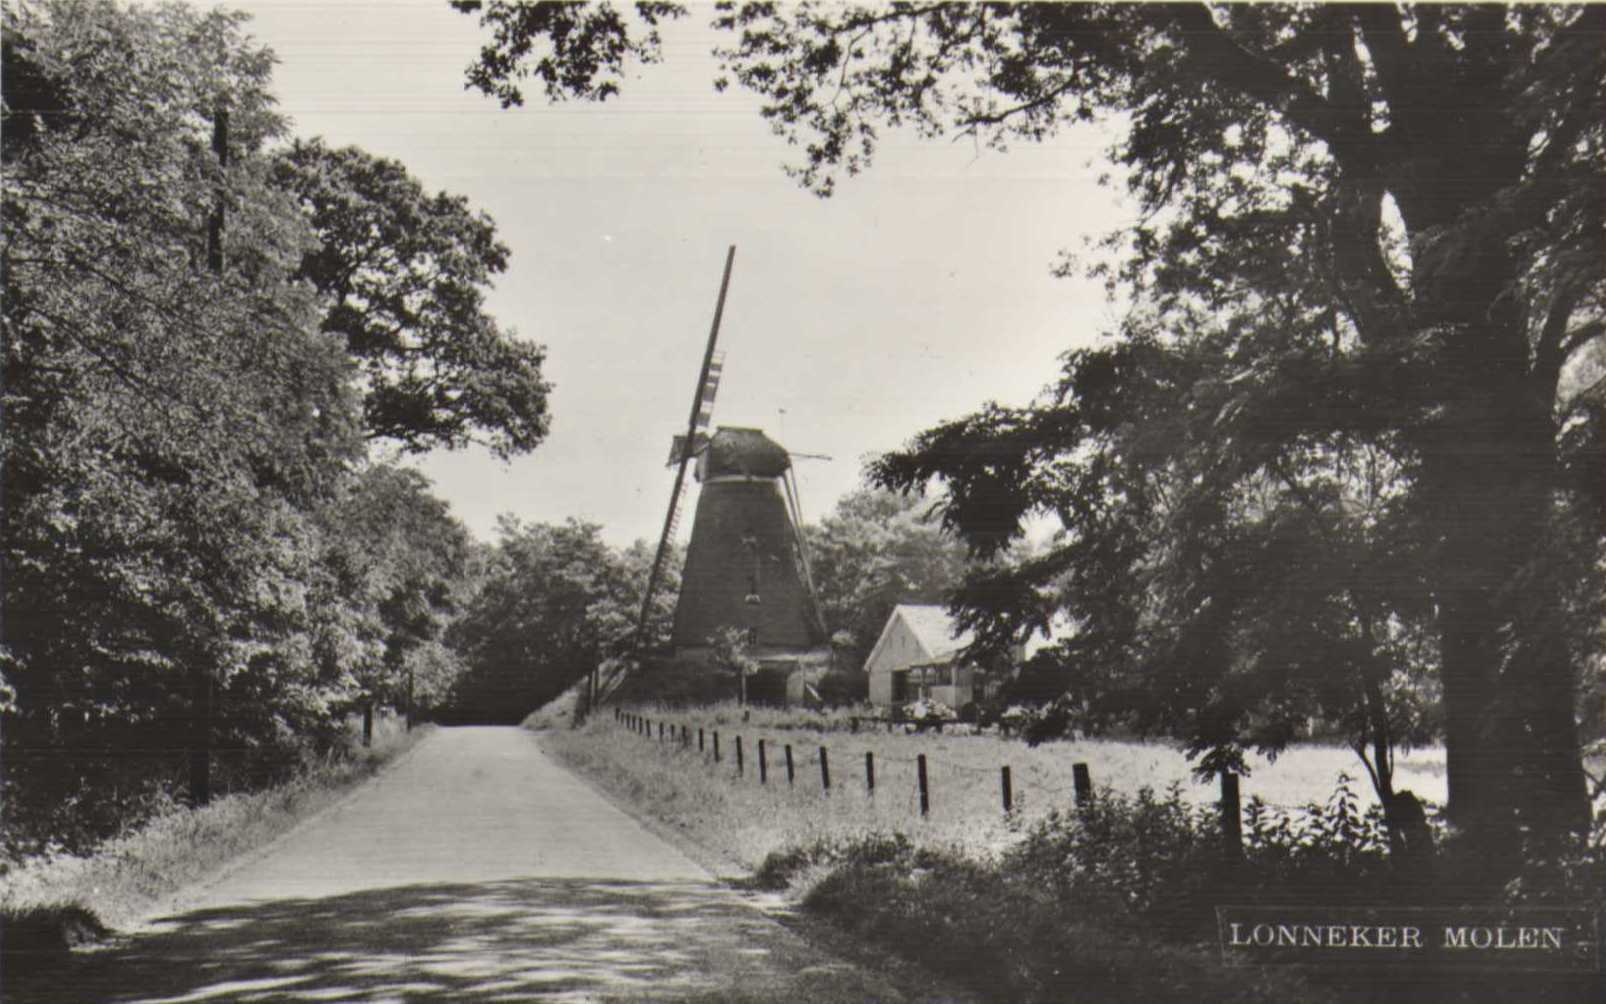 Lonneker-molen-1955.jpg